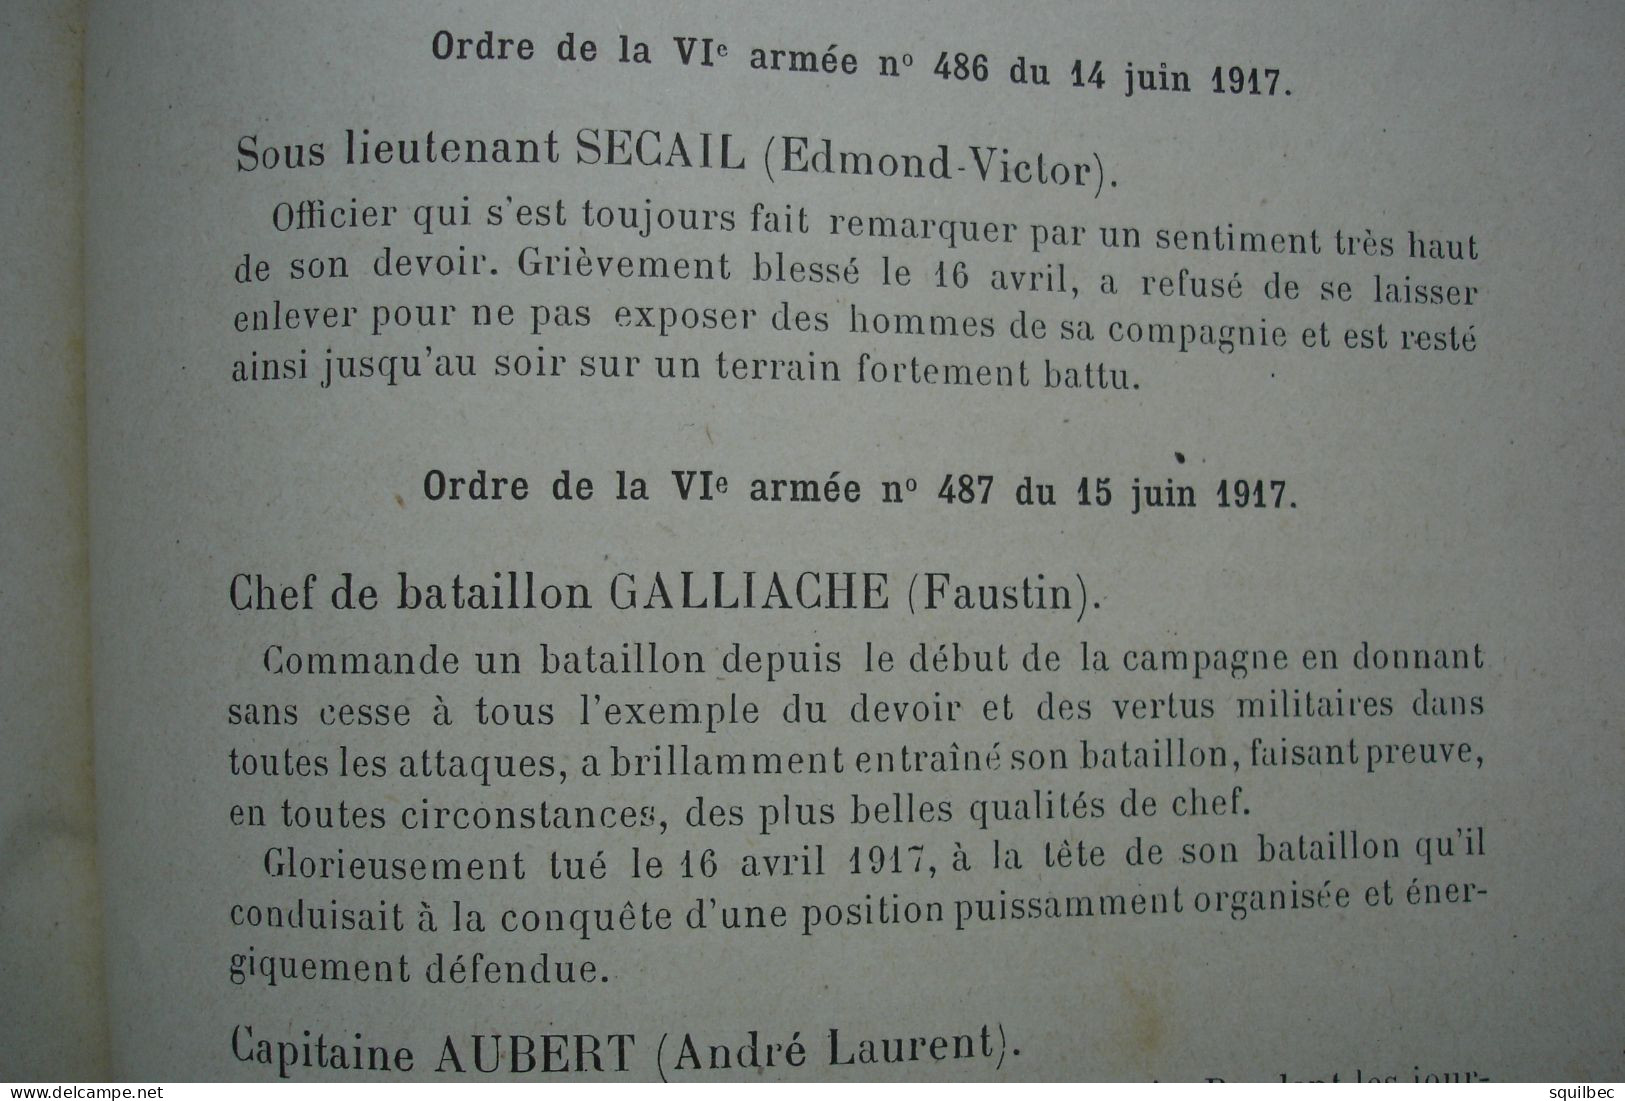 historique du 7eme régiment d'infanterie coloniale dans la guerre 14-18 , AISNE , chemin des dames reims, herpy